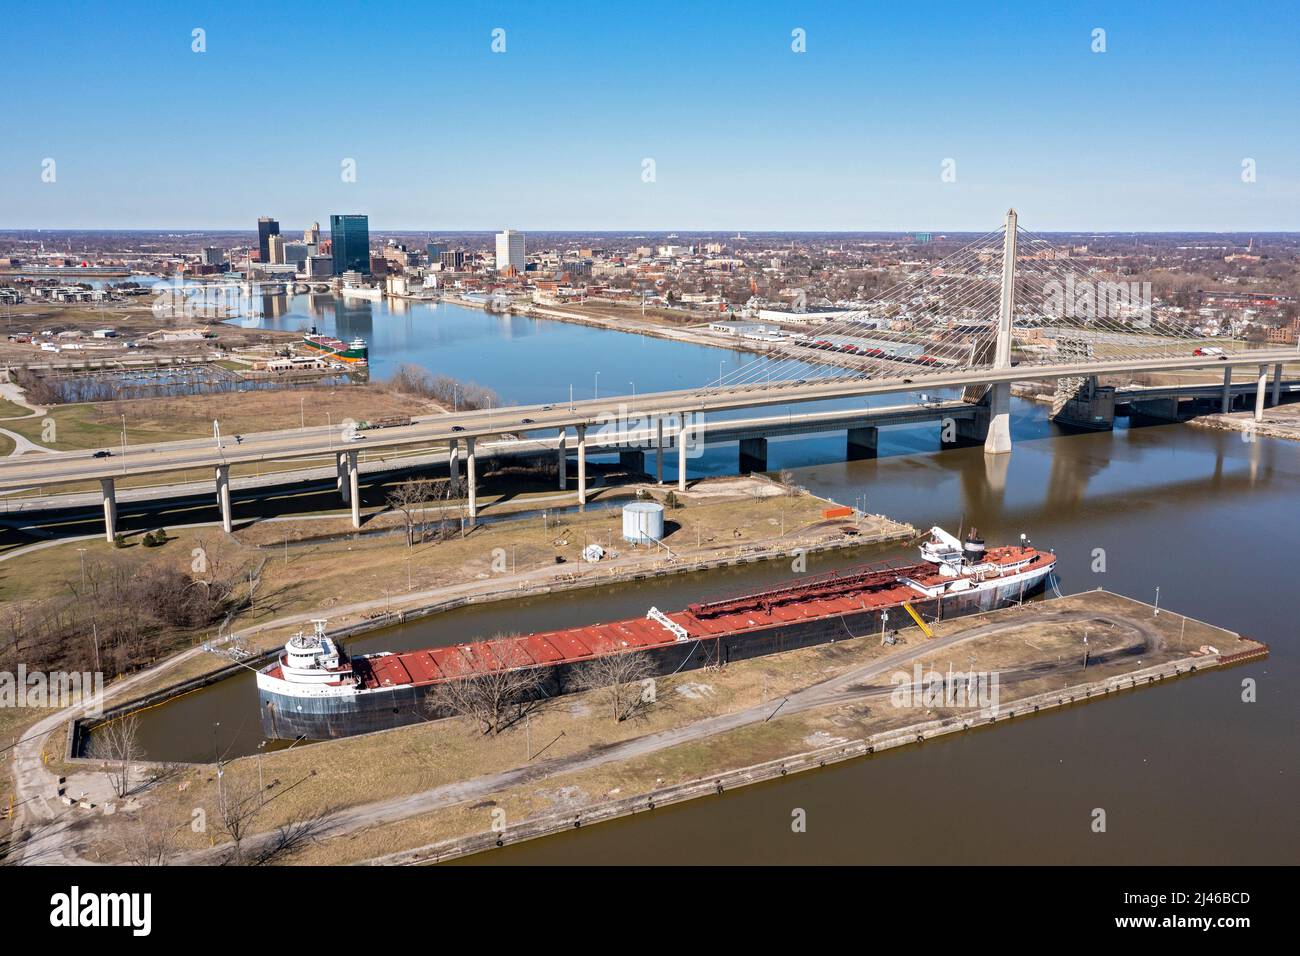 Toledo, Ohio - il ponte Veterans Glass City Skyway porta l'Interstate 280 sul fiume Maumee. Il centro di Toledo è in lontananza. La Va. Americana Foto Stock